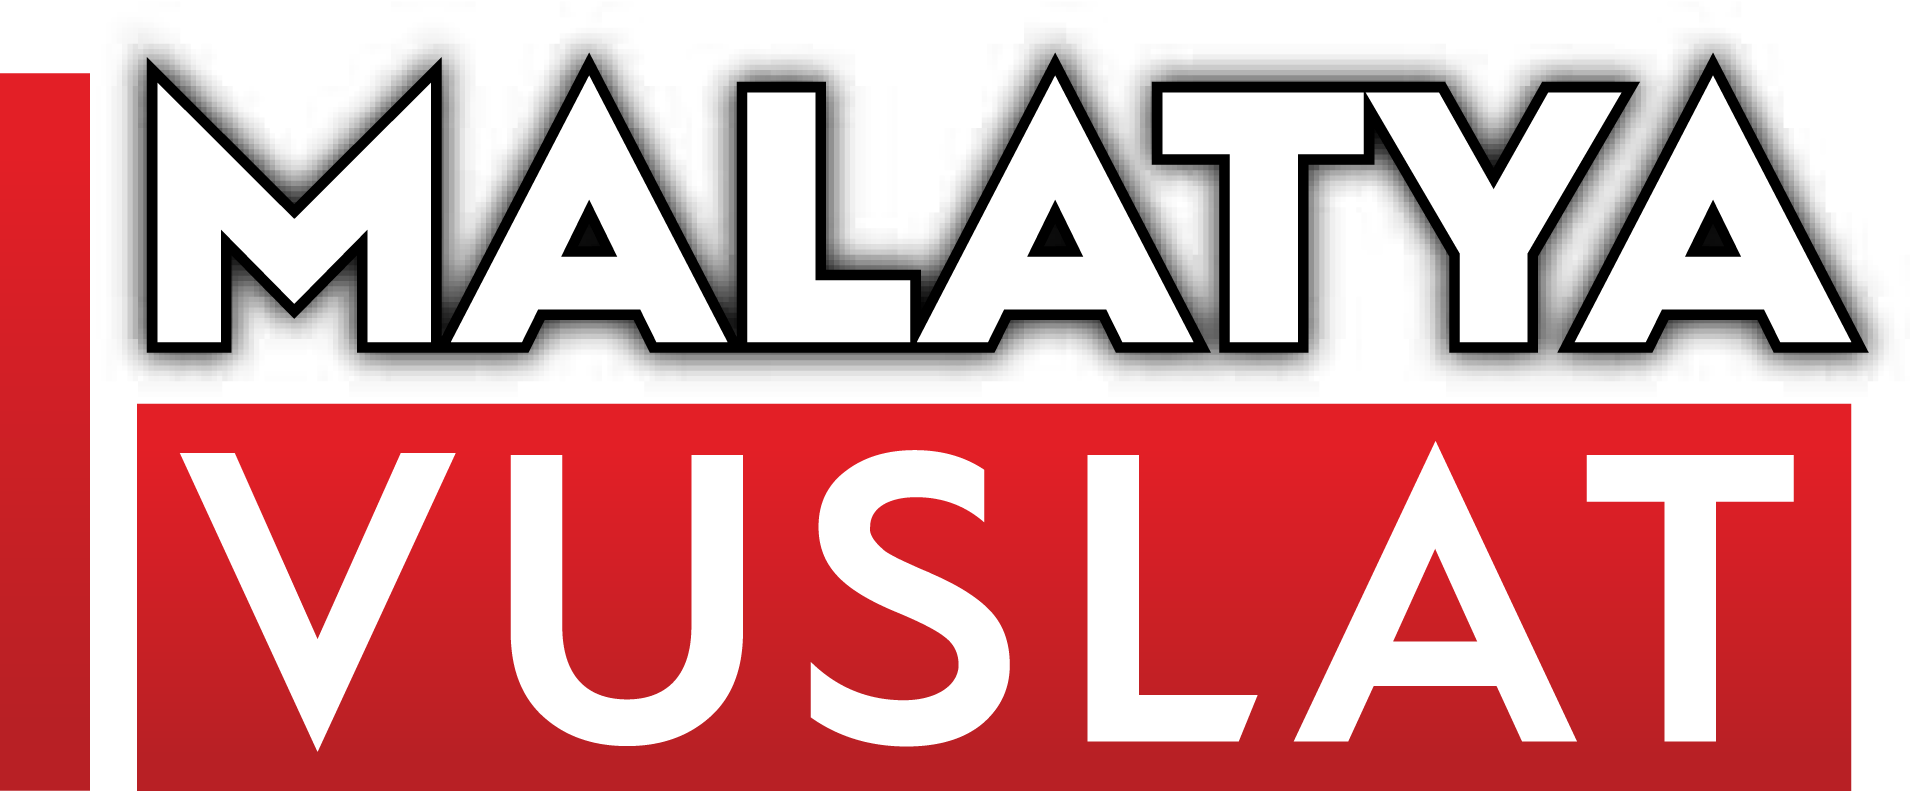 “Malatya'da Ahlaklı Belediyeciliği Tesis Edecek Kadrolar Geliyor” haber, malatya haber, vuslat haber